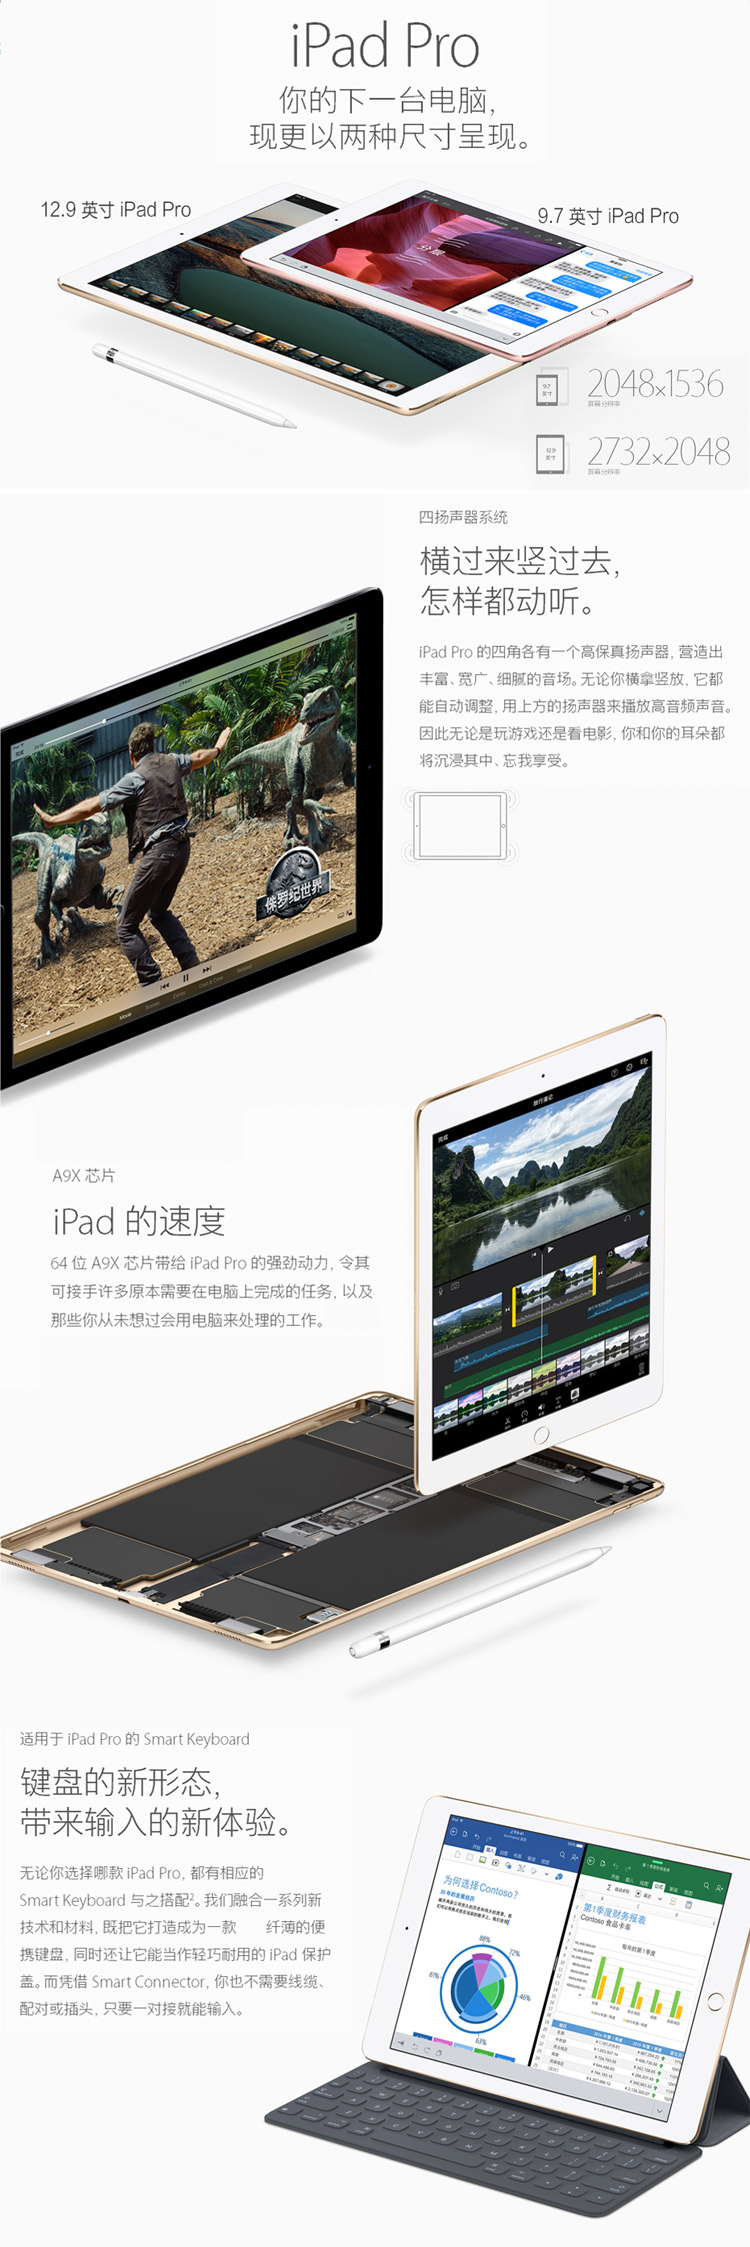 苹果/Apple iPad Pro WLAN 32GB 9.7 英寸平板电脑